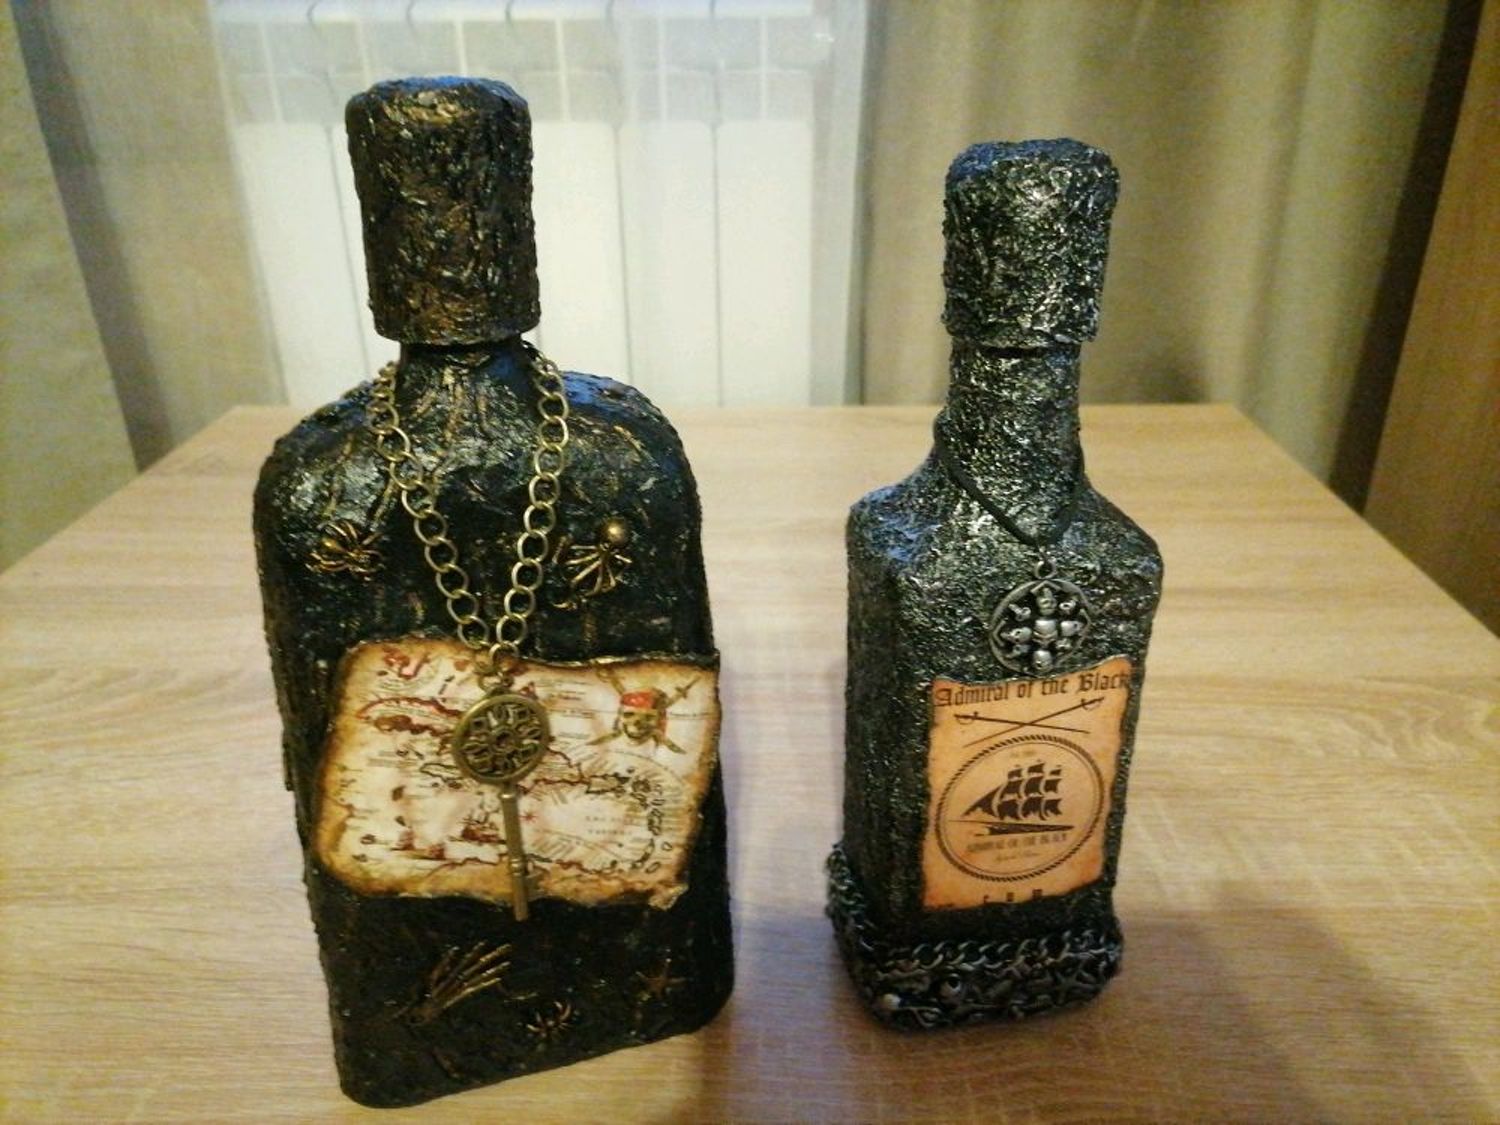 Фото №1 к отзыву покупателя kruzhkov1977 о товаре Декупаж. Декор бутылок в пиратском стиле.